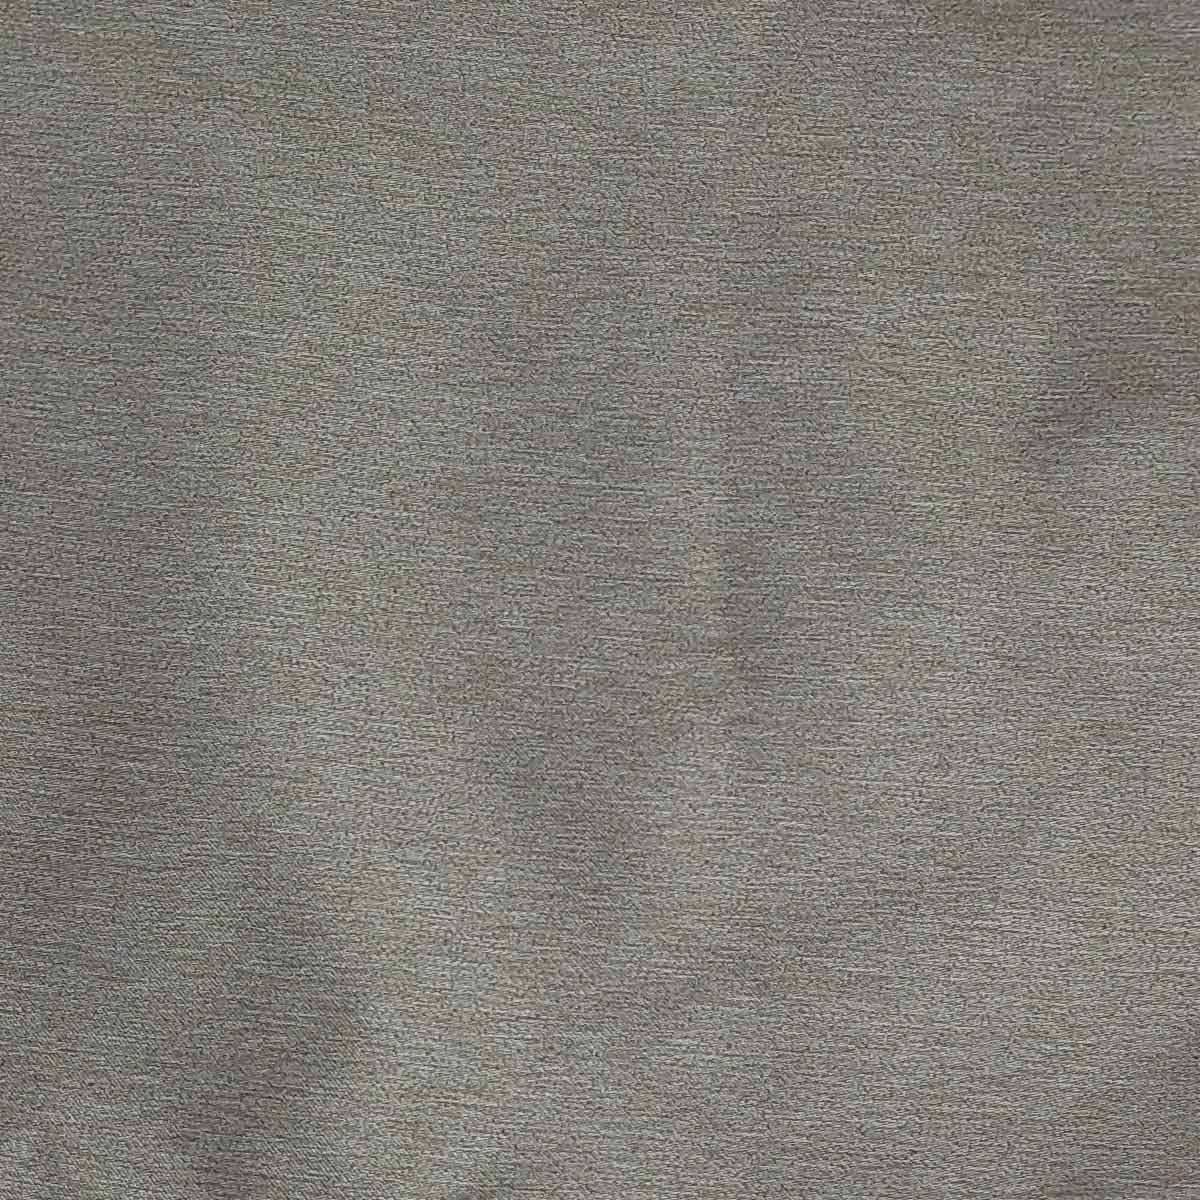 Cortina Corta Luz 80% Tecido 2.60m x 1.70m Blend Nude Bella Janela